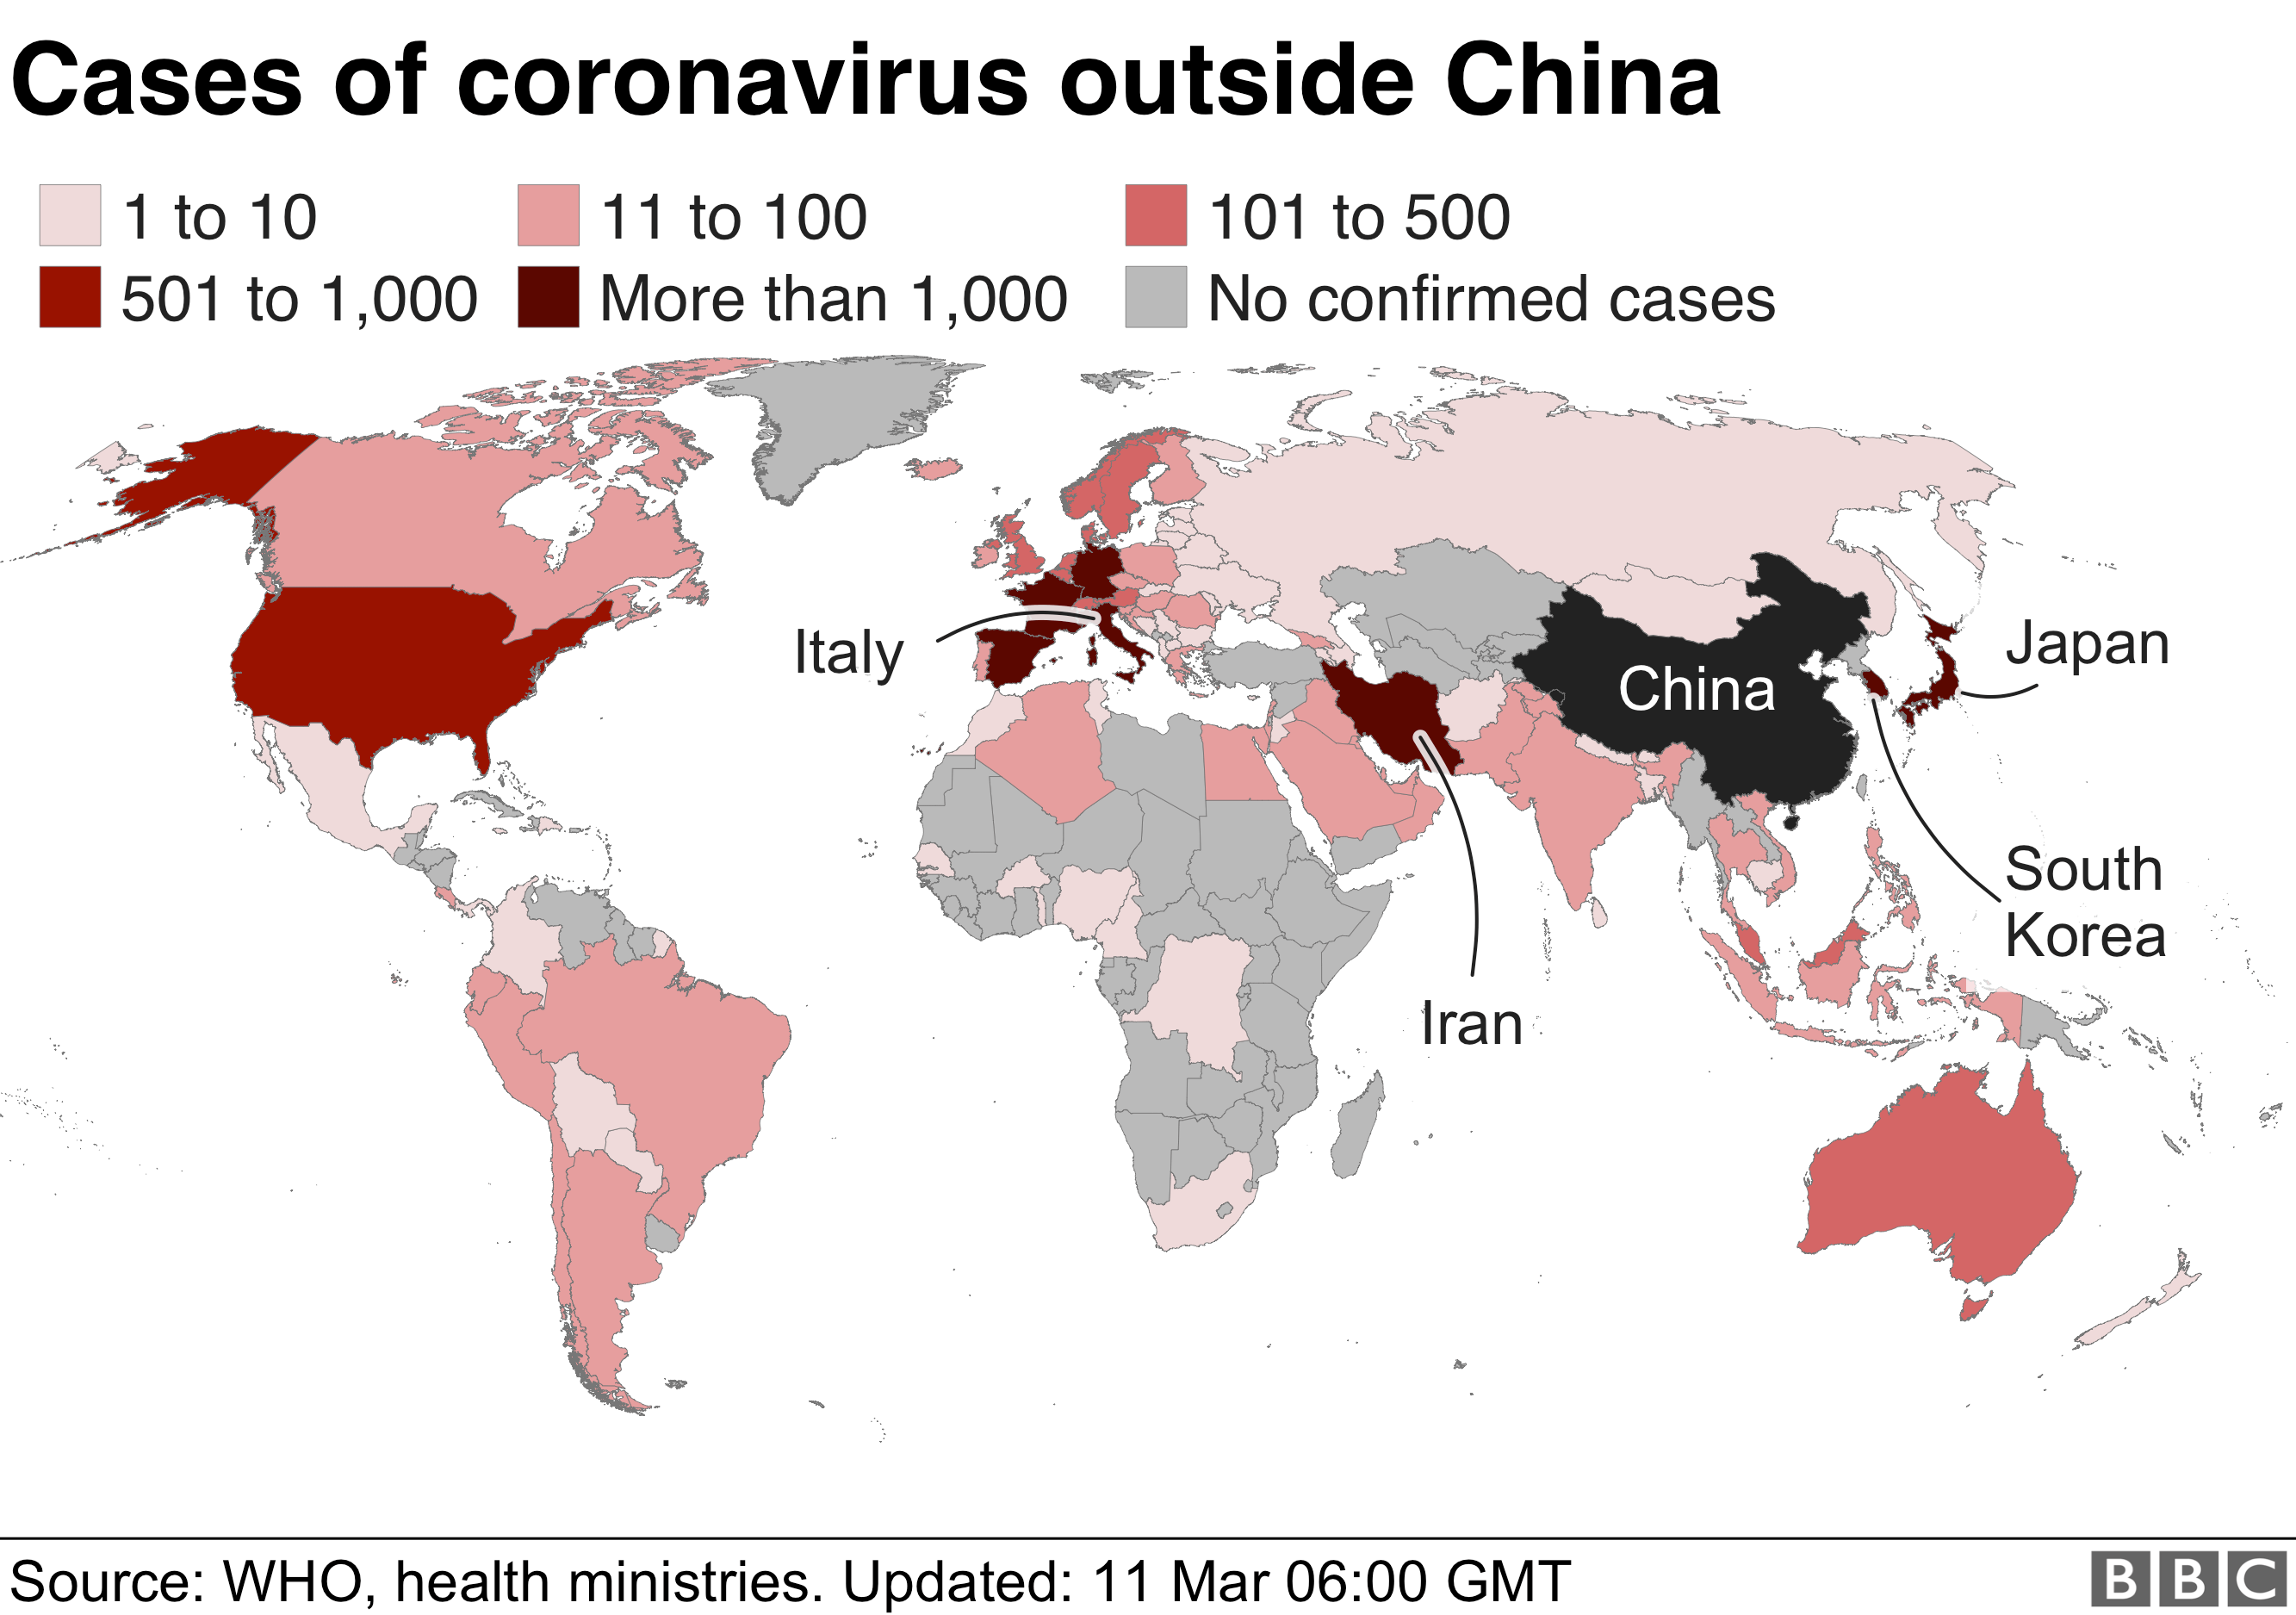 Карта с указанием случаев заболевания за пределами Китая